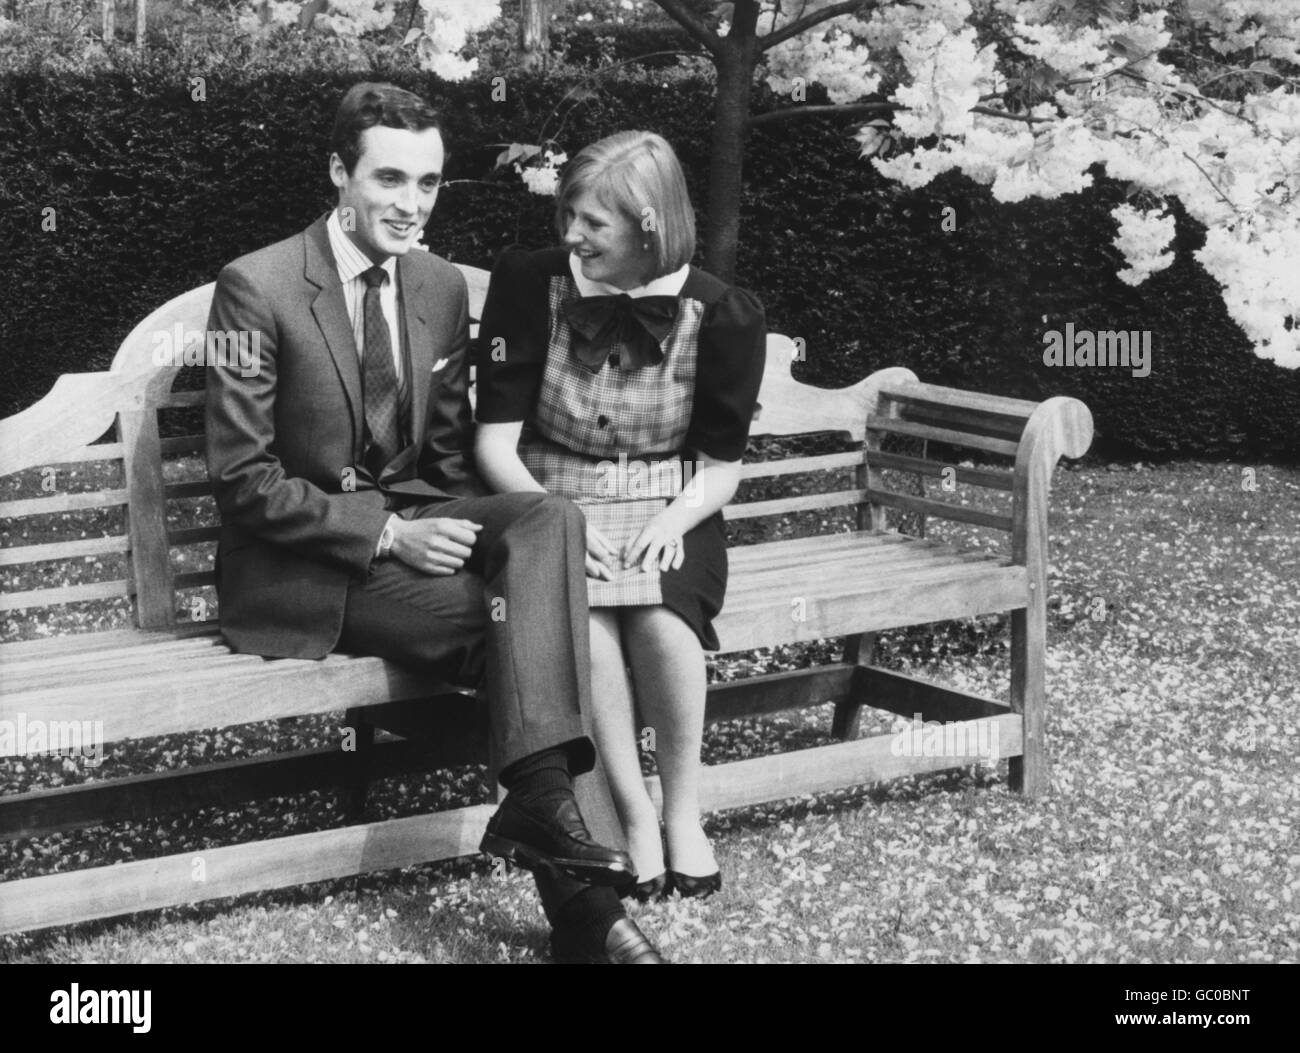 Prinzessin Astrid von Belgien und Erzherzog Lorenz von Österreich auf Schloss Belvedere am 13. Mai dieses Jahres, als sie offiziell verlobt wurden. Sie sollen am 22. September 1984 in der Kirche des "Grand Sablon" in Brüssel heiraten. Stockfoto